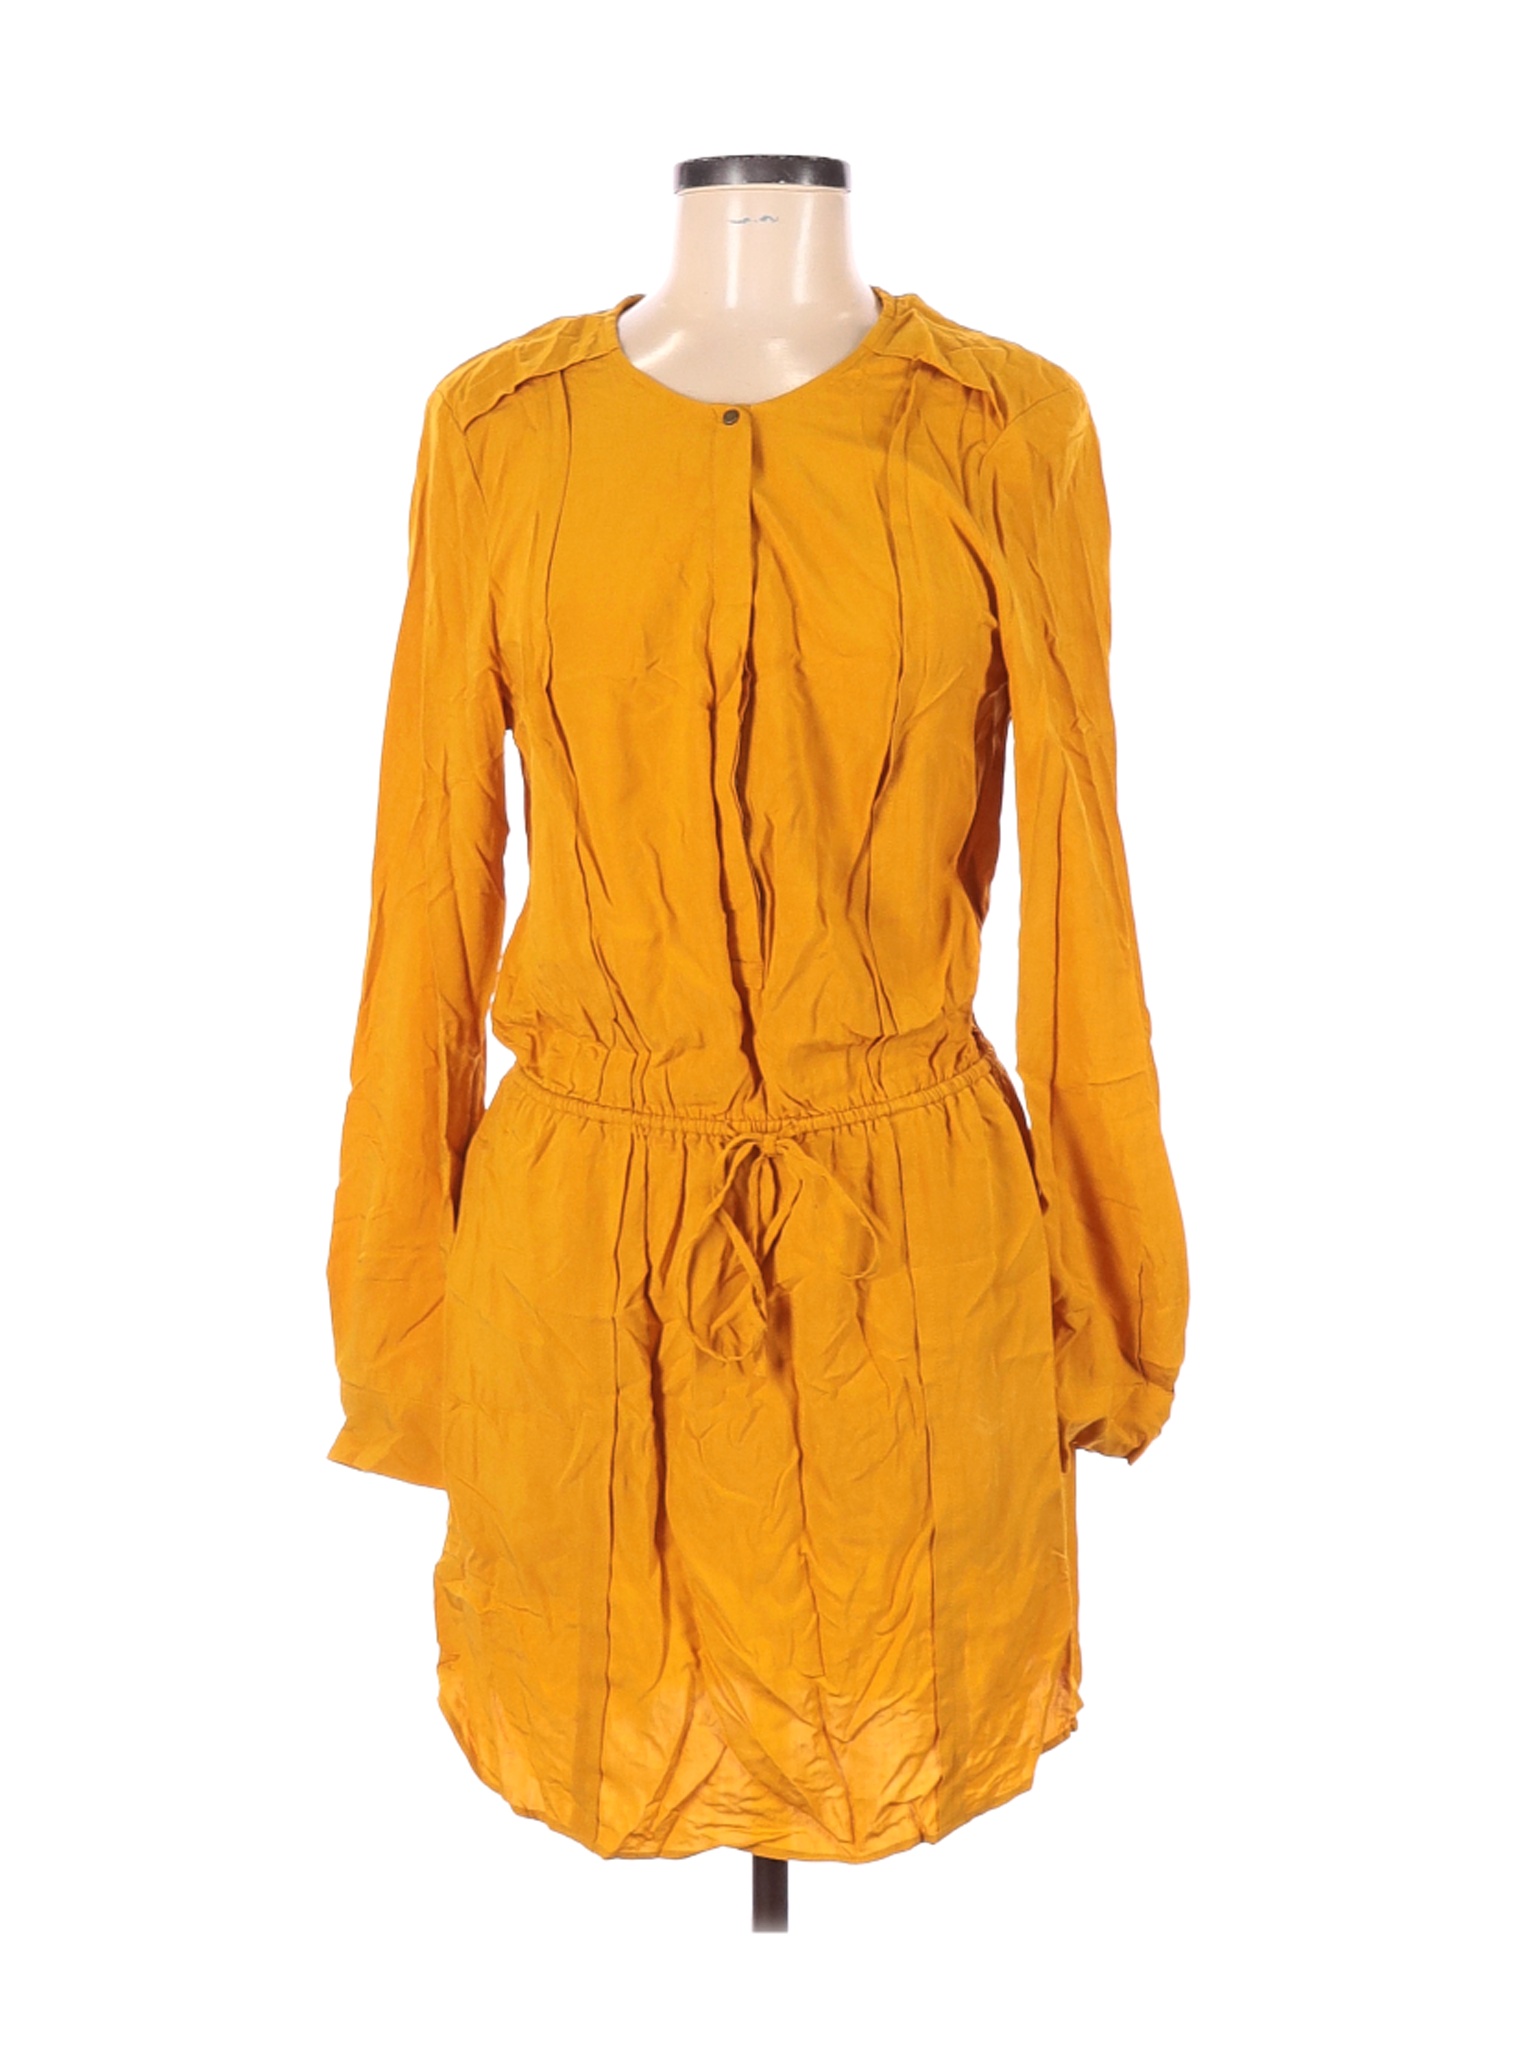 Banana Republic Women Yellow Casual Dress 6 | eBay